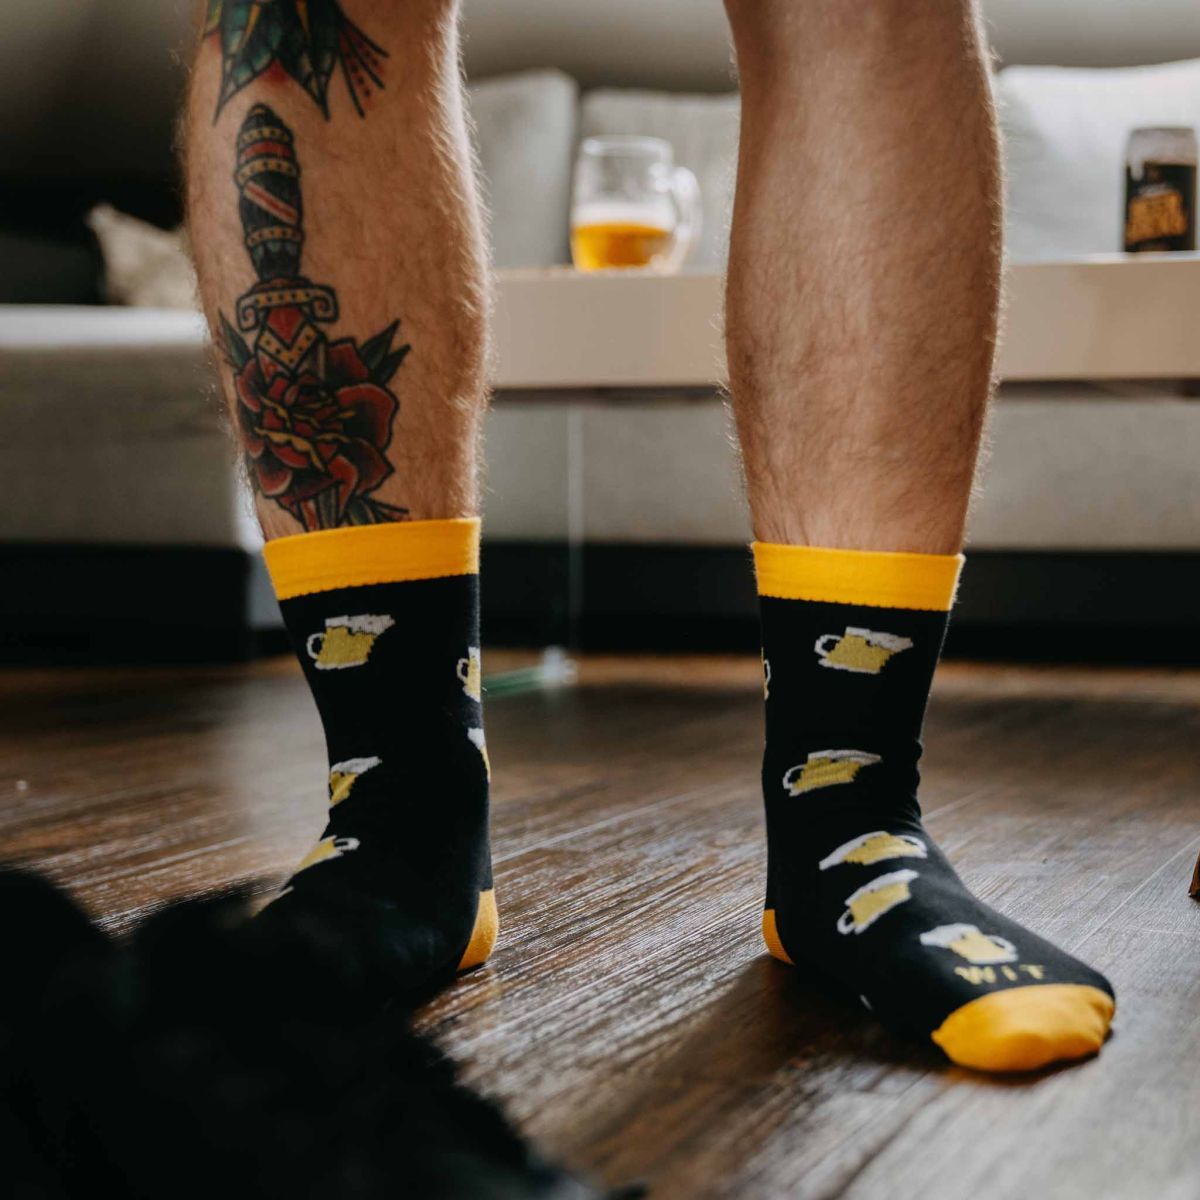 Ponožky - Přines mi pivo